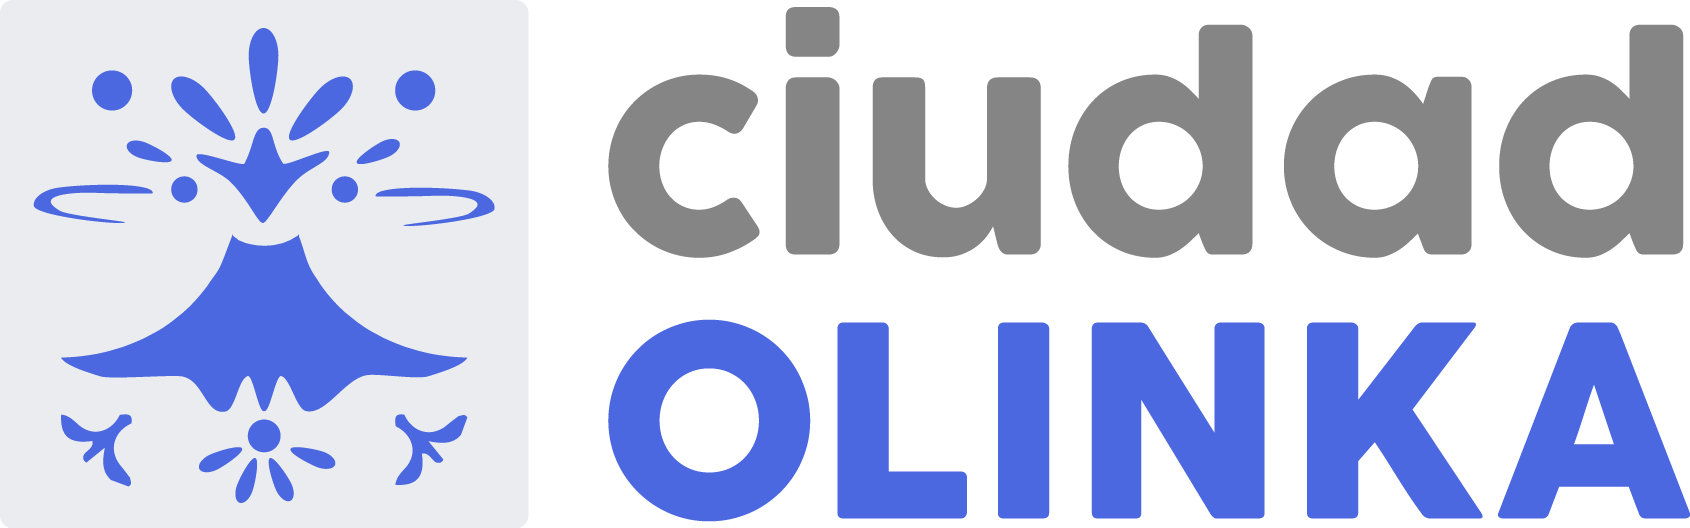 Ciudad Olinka